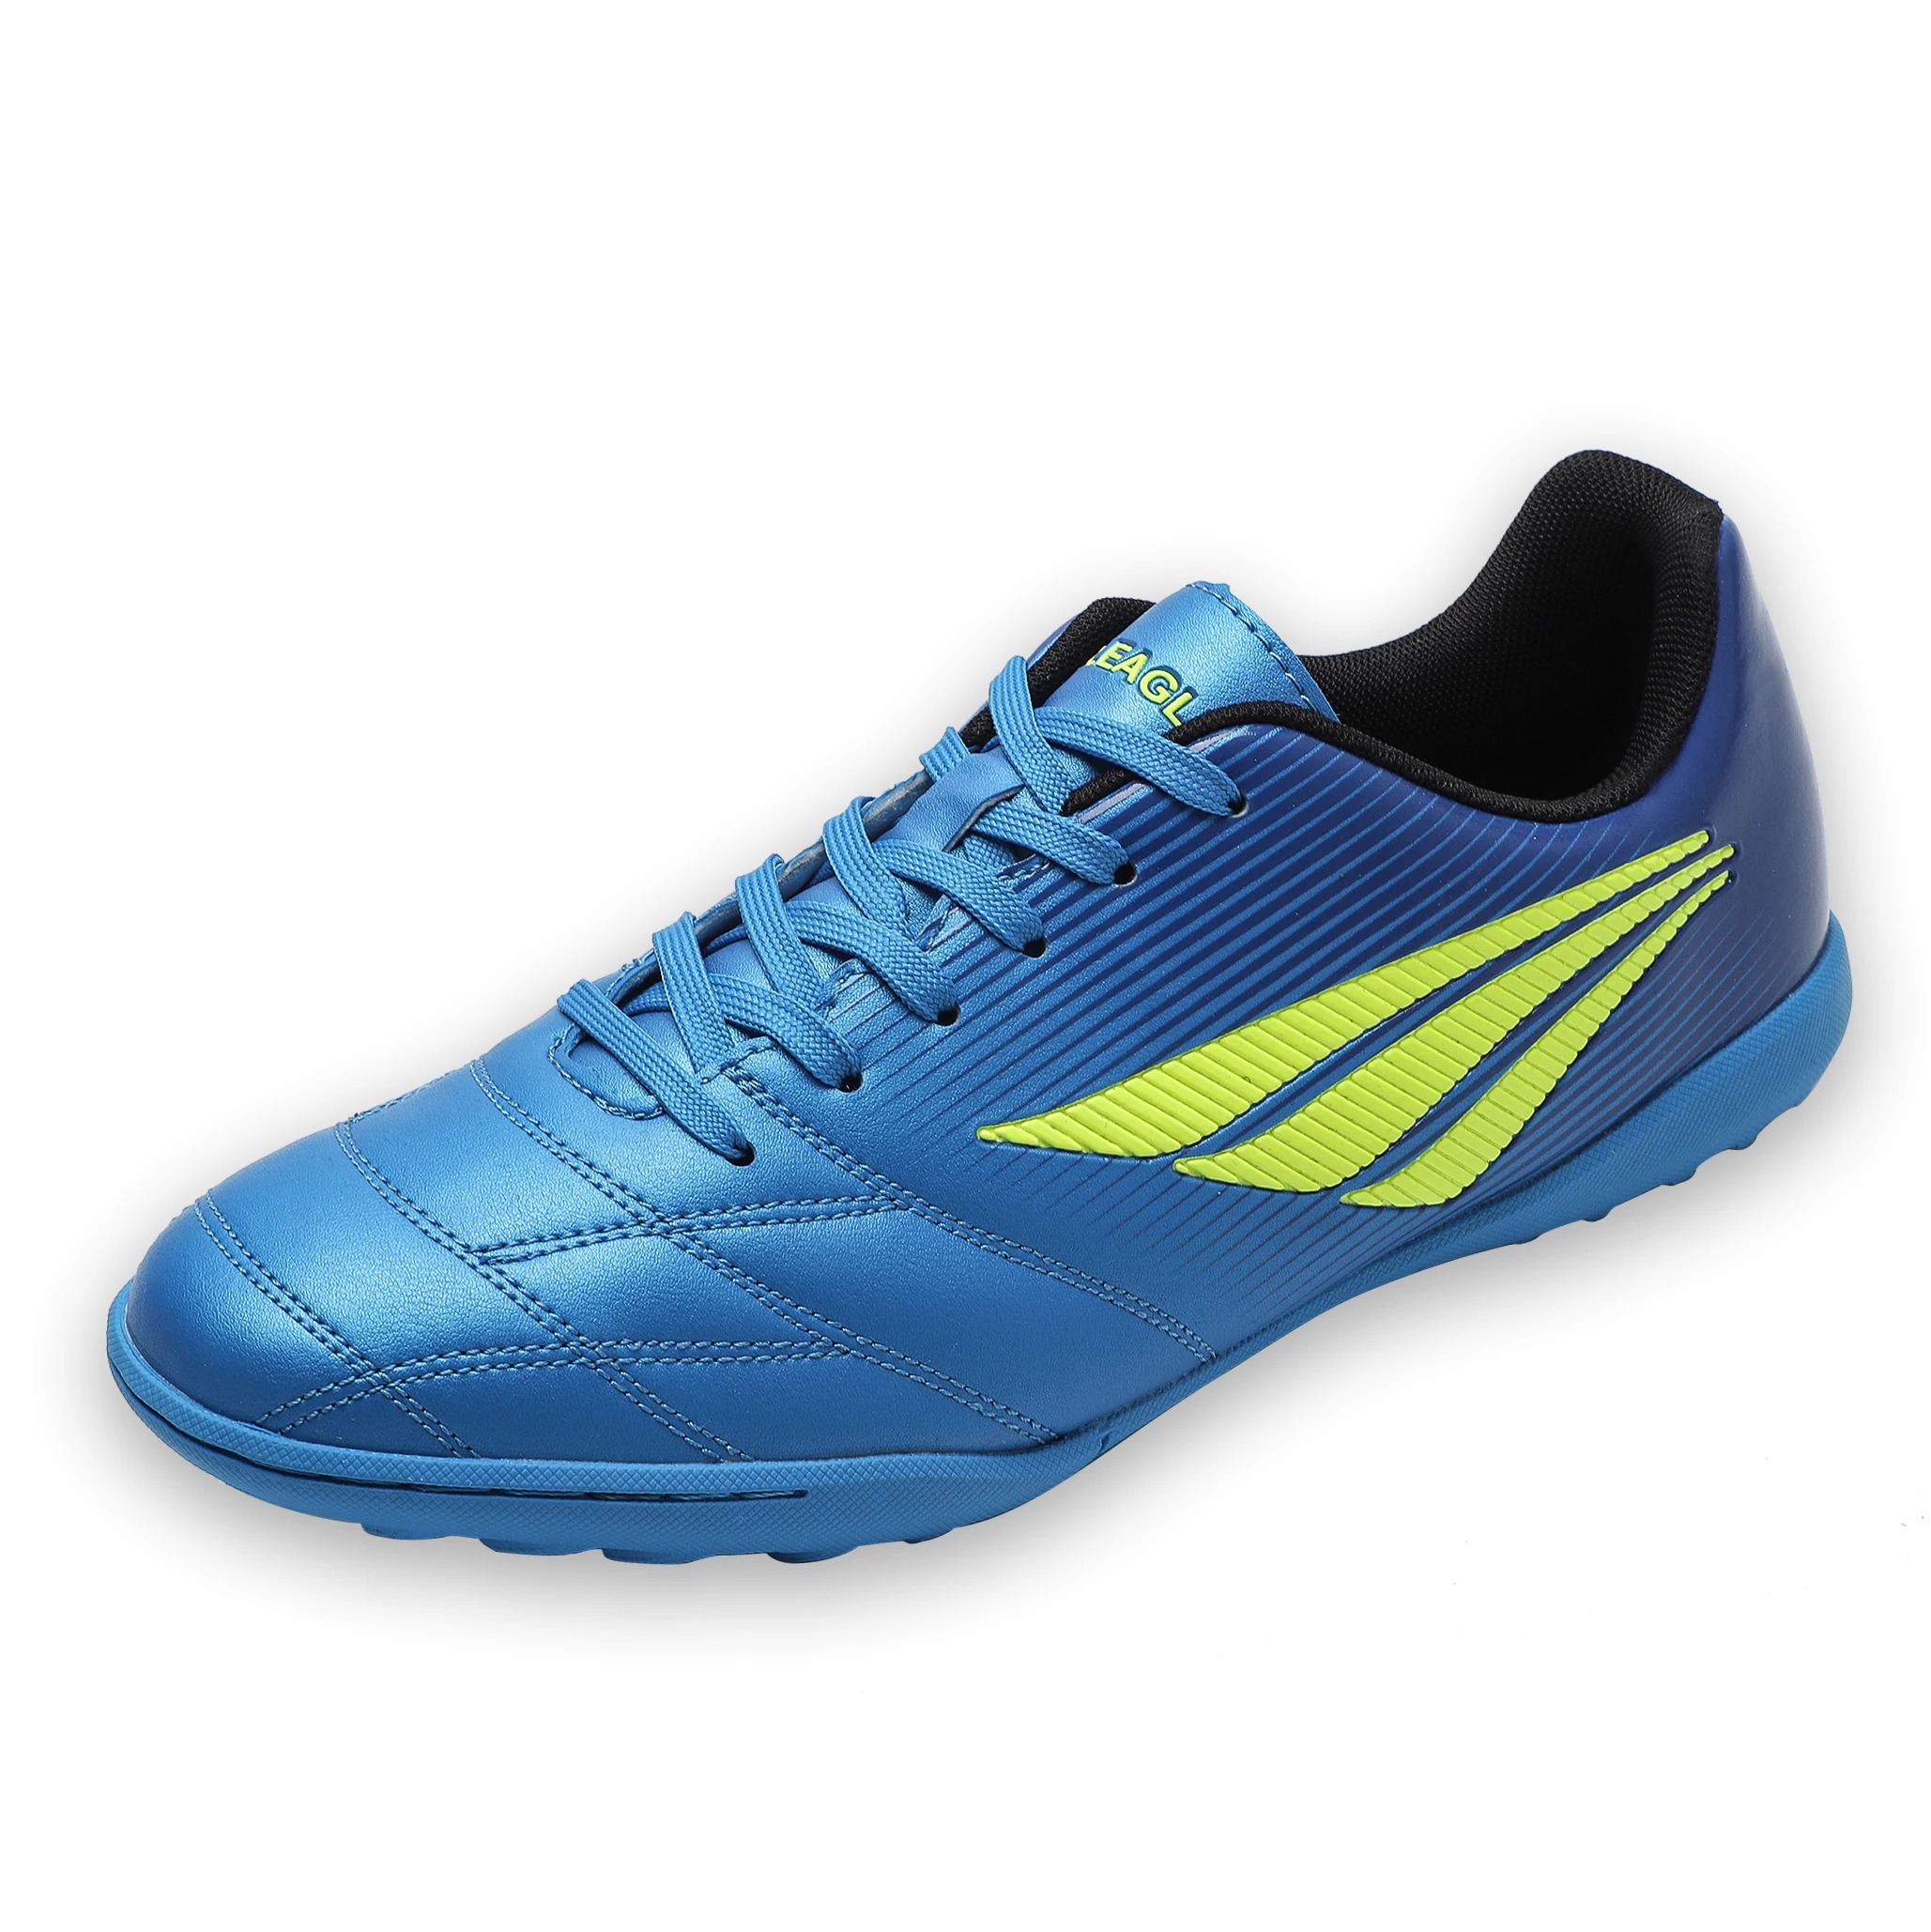 Zeeohh/футбольная обувь для взрослых; Легкие кроссовки для тренировок на открытом воздухе; chuteira futsal; размеры 38-48